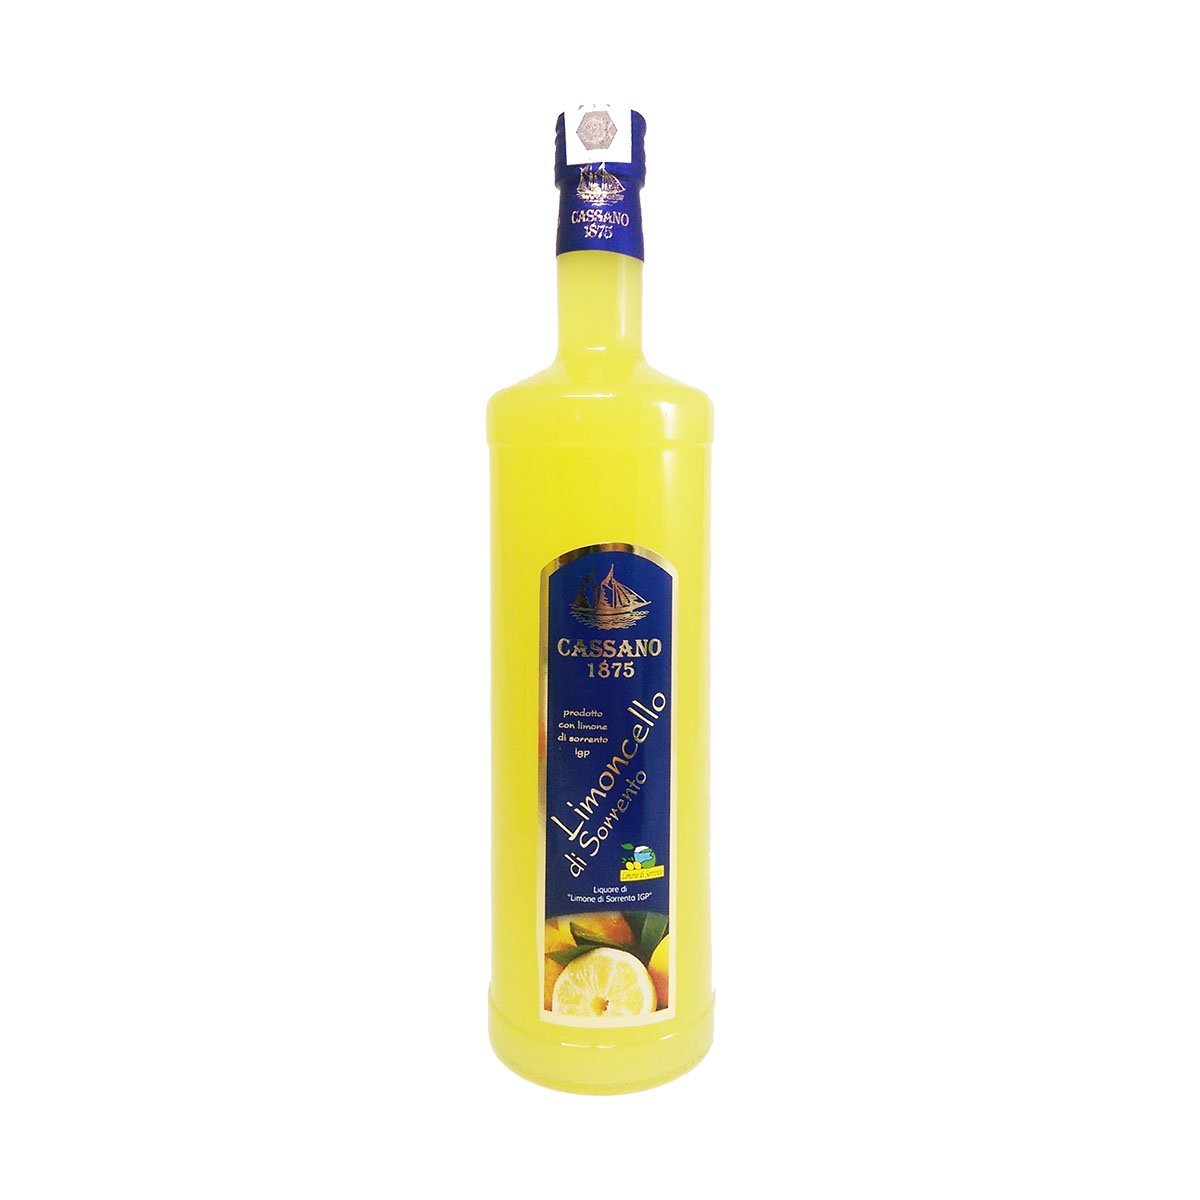 1000ml PepeGusto Limoncello Lemon of – Party Autumn Sorrento 3x IGP Offer